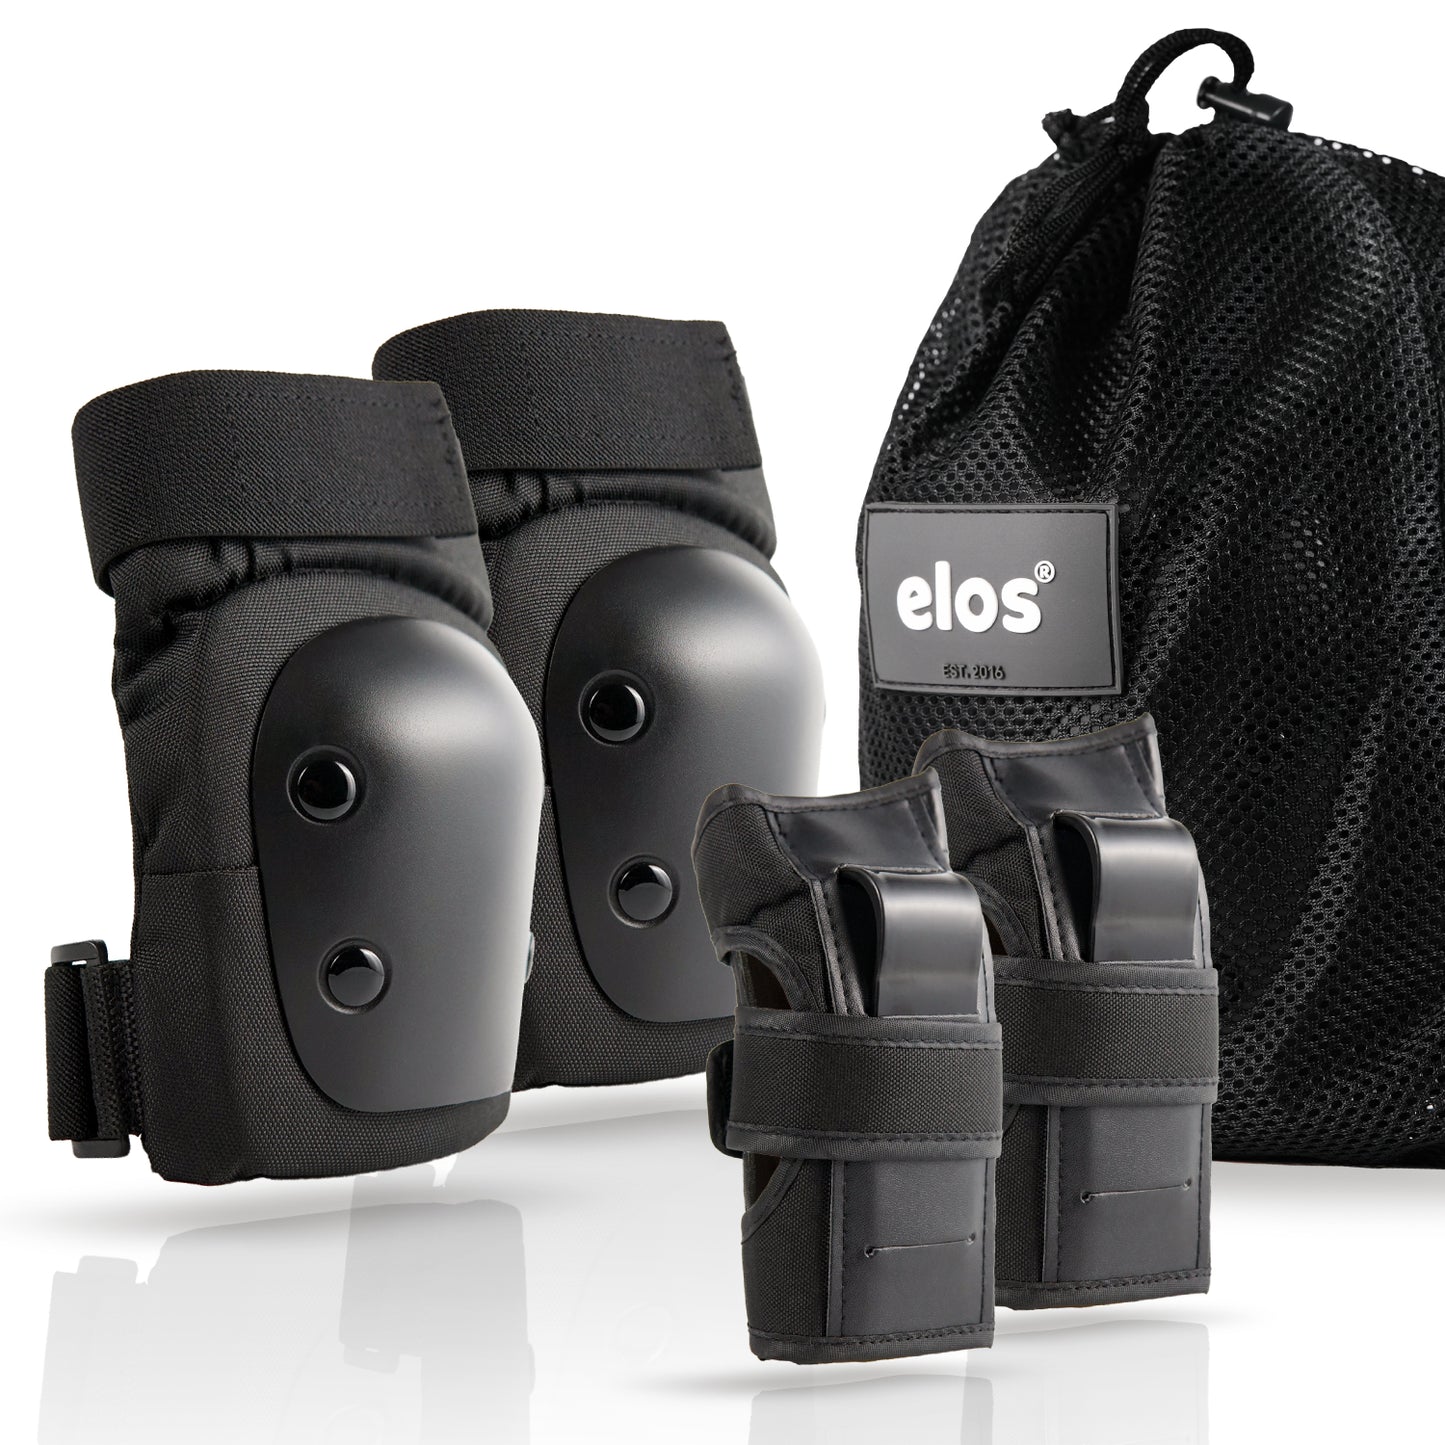 Elosスケボー プロテクター3点セット(膝/肘/手首)